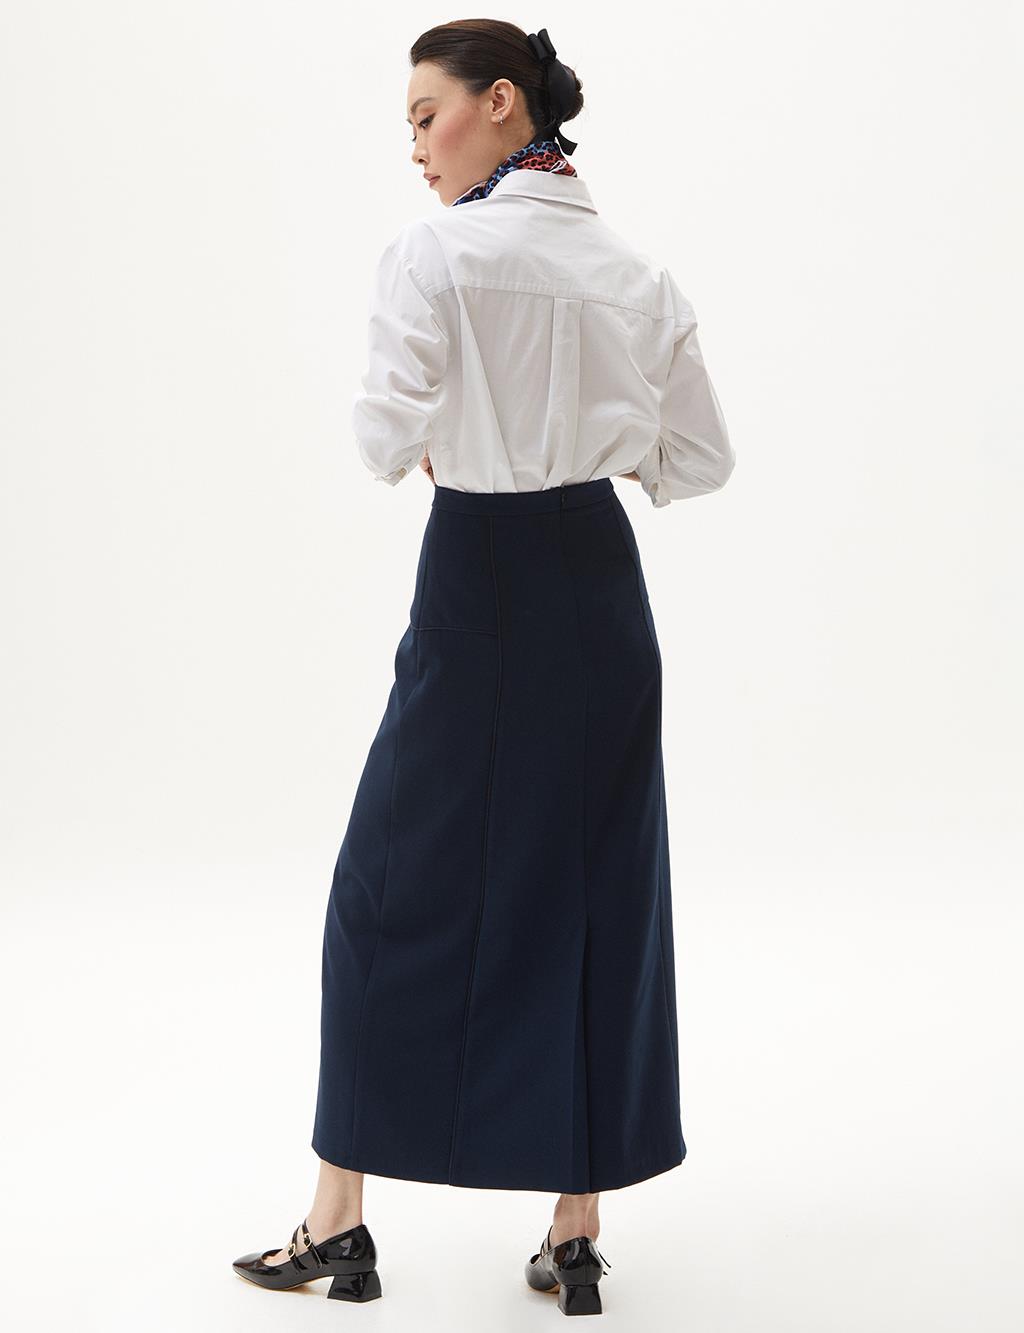 High Waist A-Line Skirt Dark Navy Blue